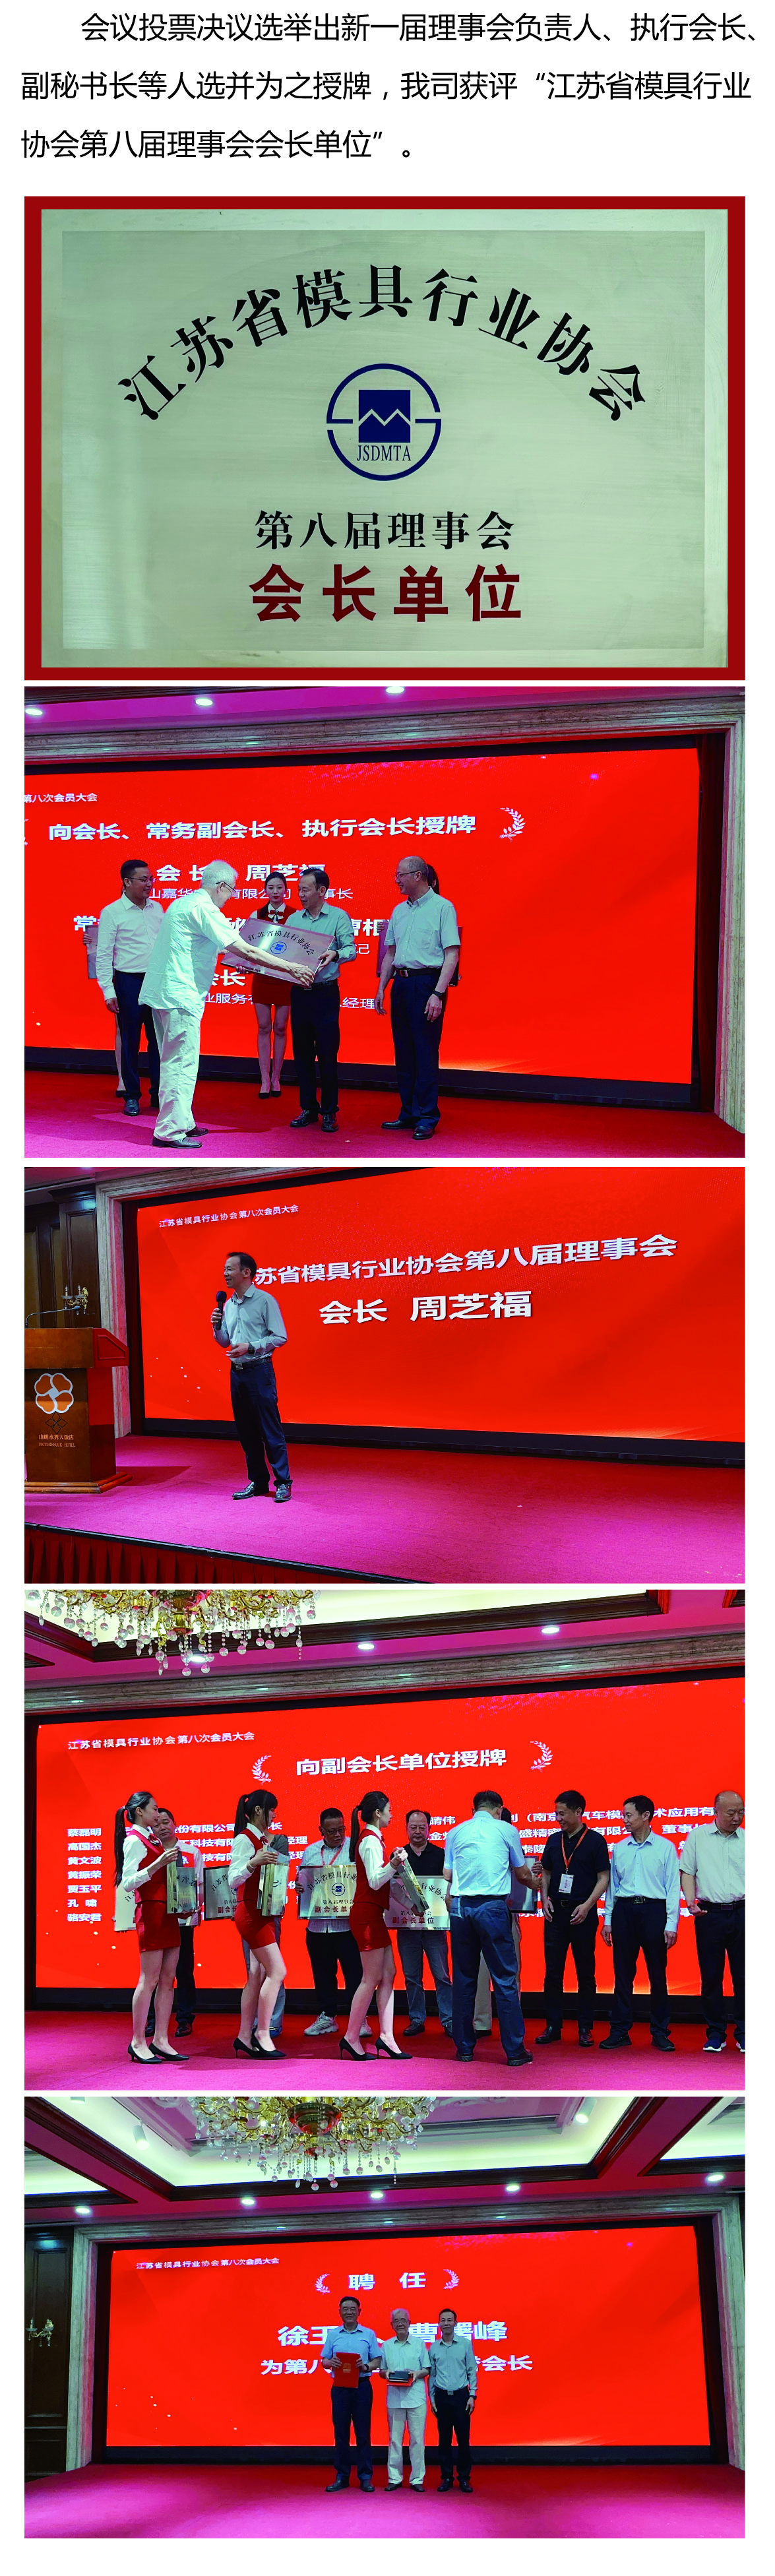 嘉华电子在江苏省模具行业协会第八次会员大会上荣获多个奖项 